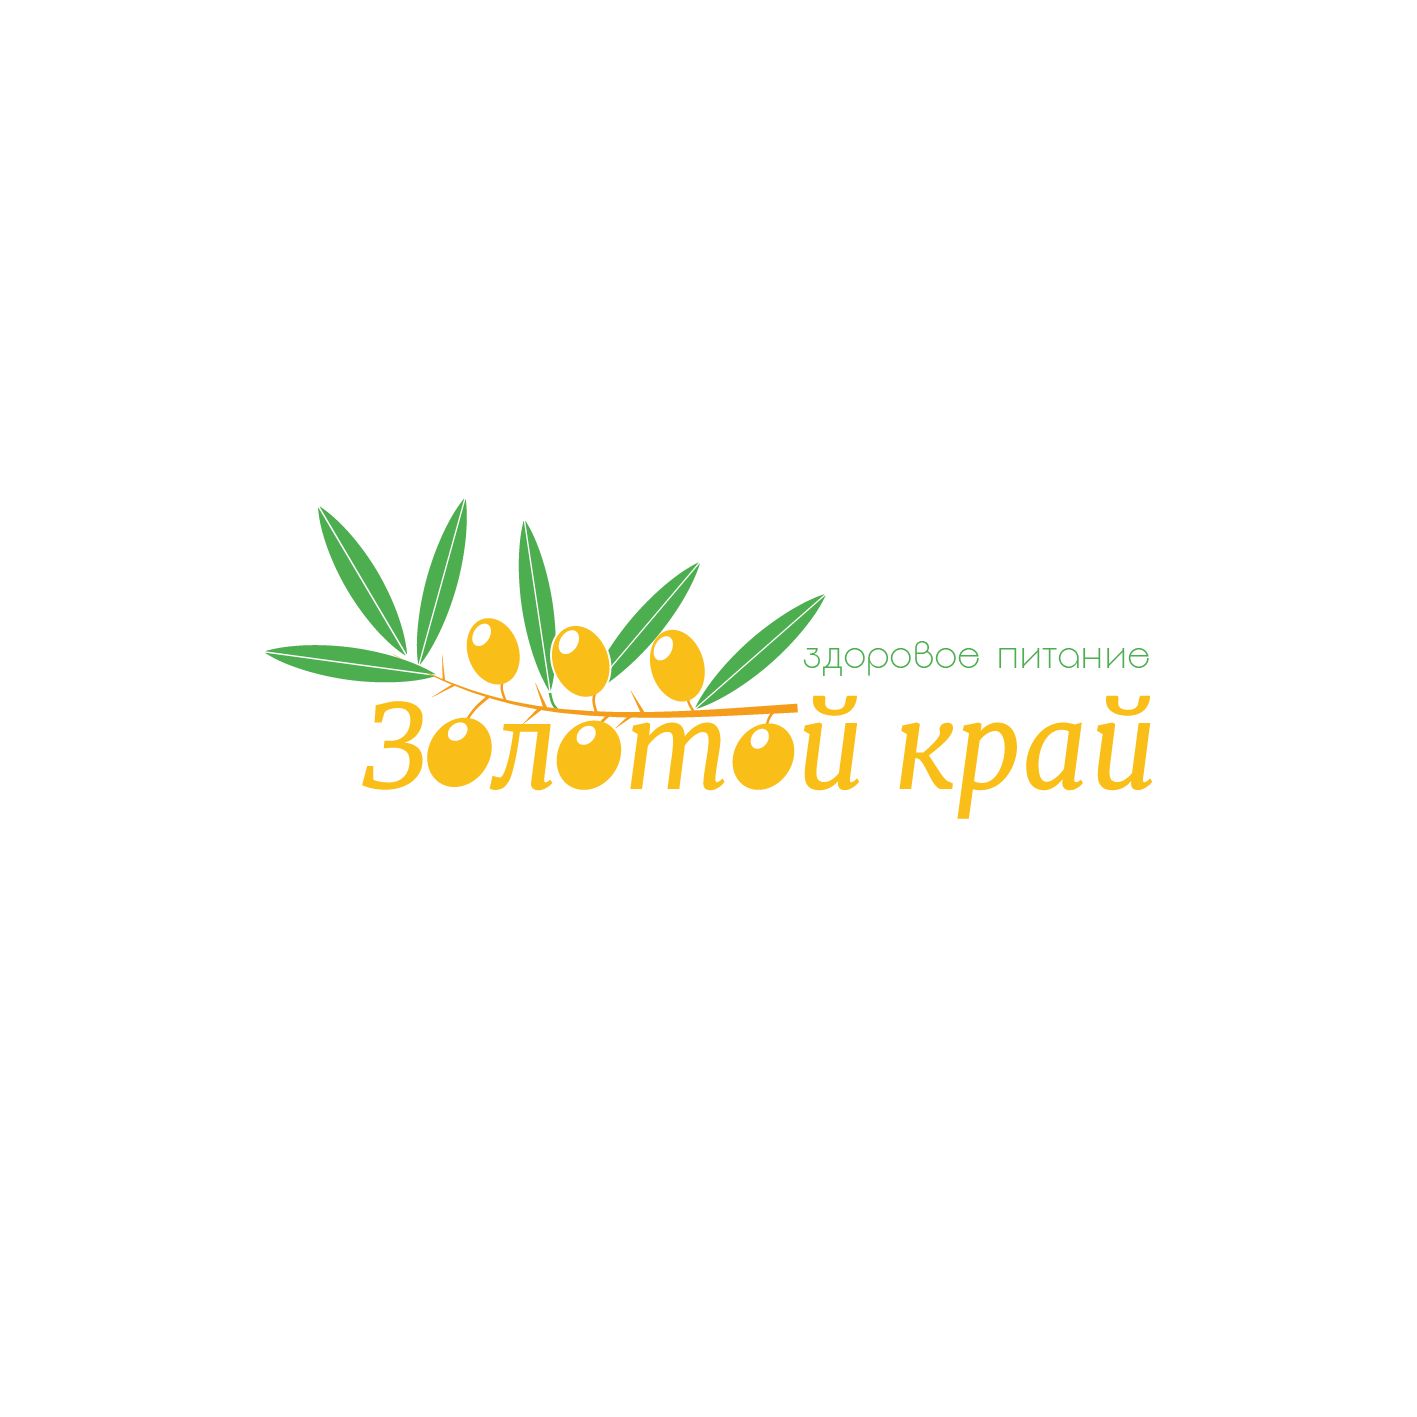 Логотип для магазина натуральных продуктов - дизайнер Linara2185